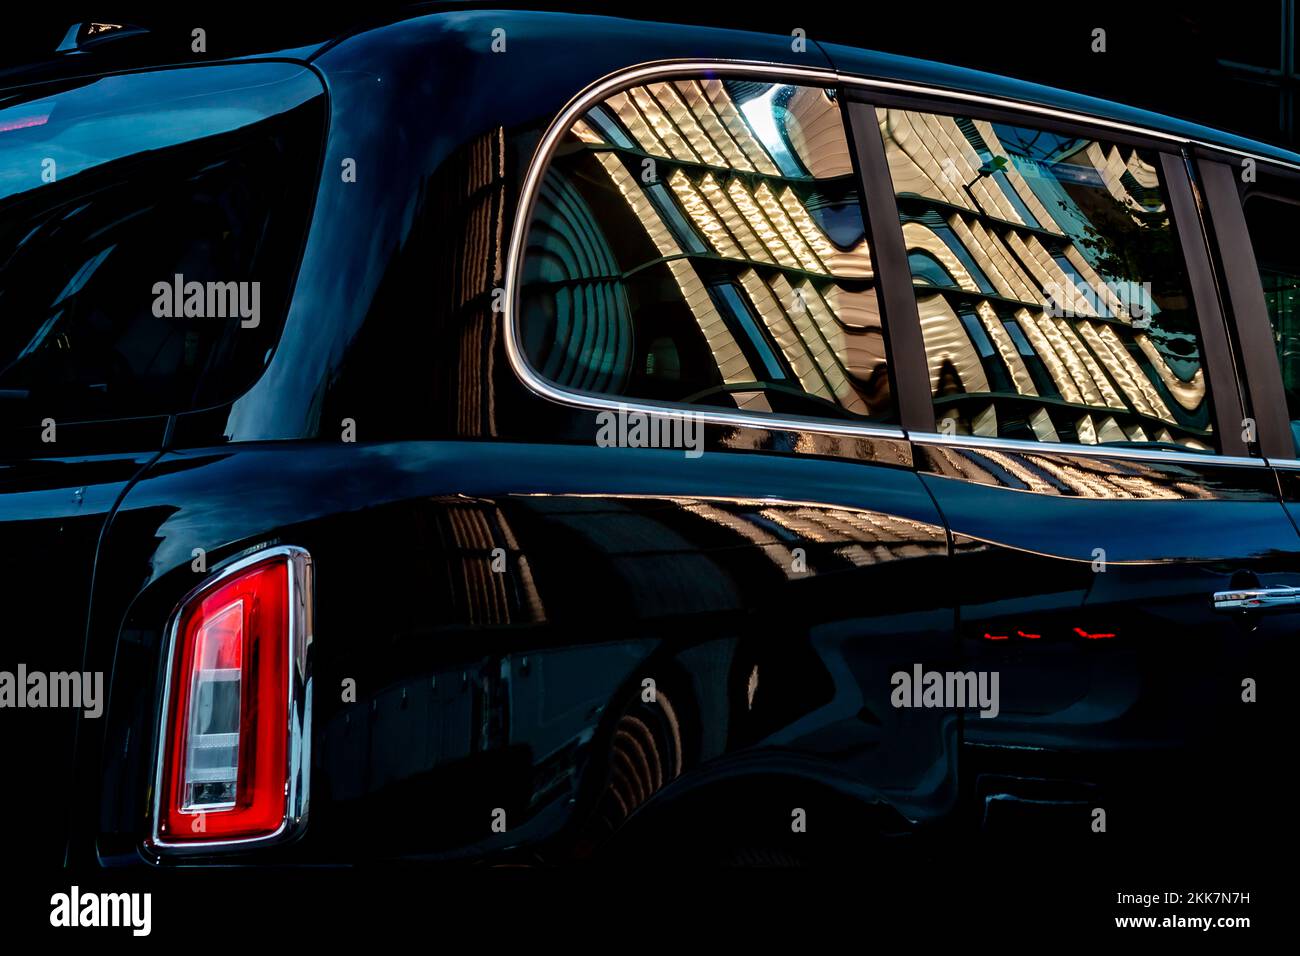 Ein neues Black Taxi Cab mit einem glänzenden neuen Gebäude, das sich in der hochpolierten Karosserie widerspiegelt. Dies ergibt ein überzeugendes redaktionelles Bild. Seitenansicht. Stockfoto